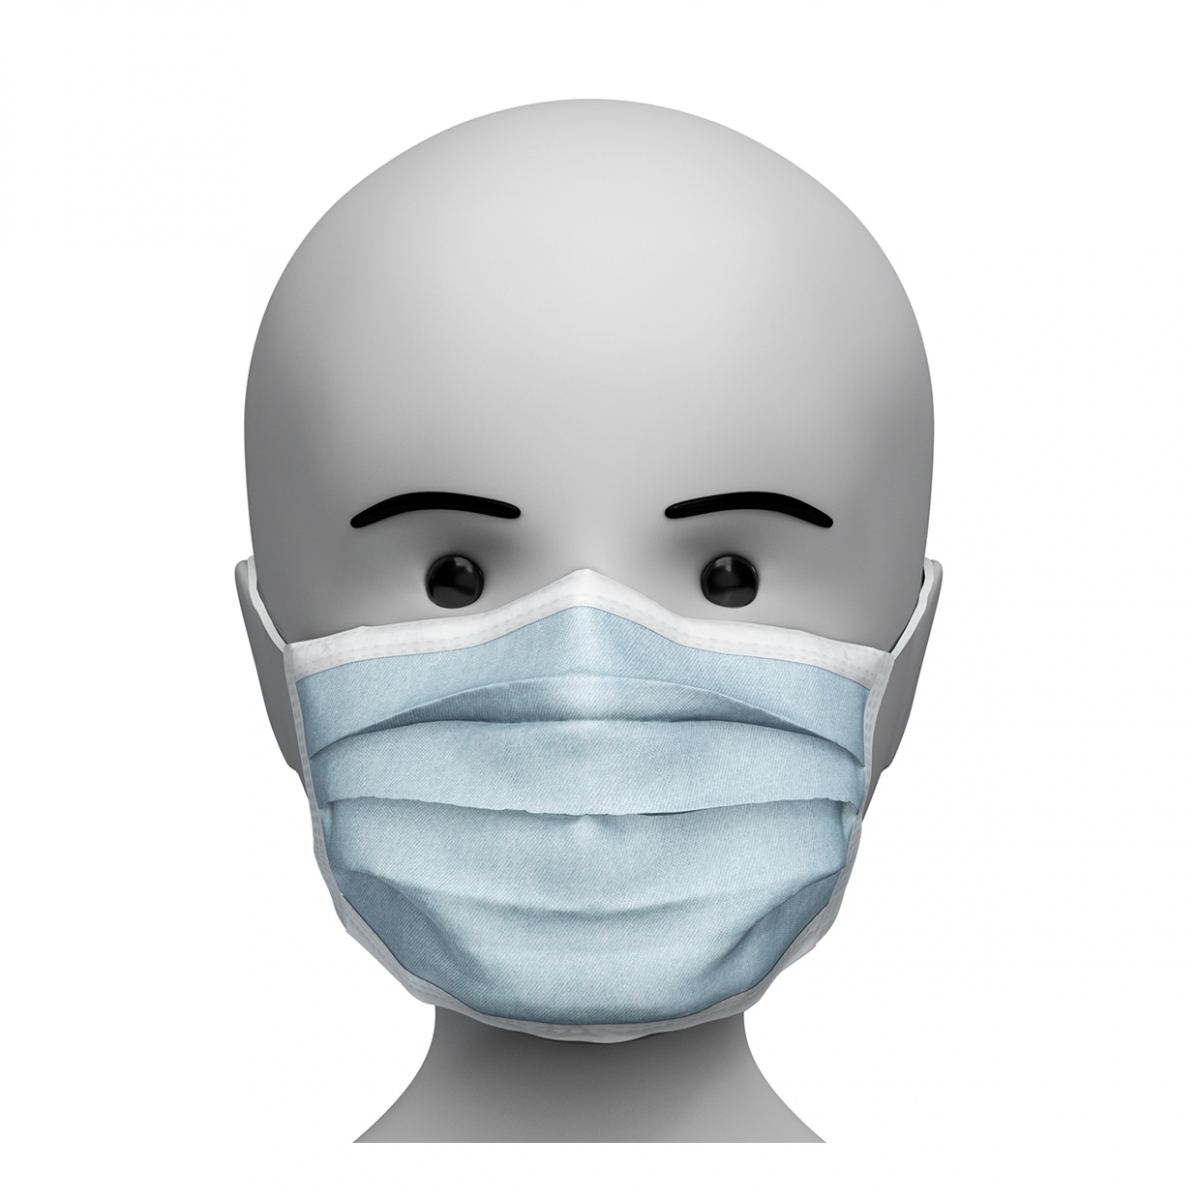 Imagen de una persona con la mascarilla quirúrgica puesta